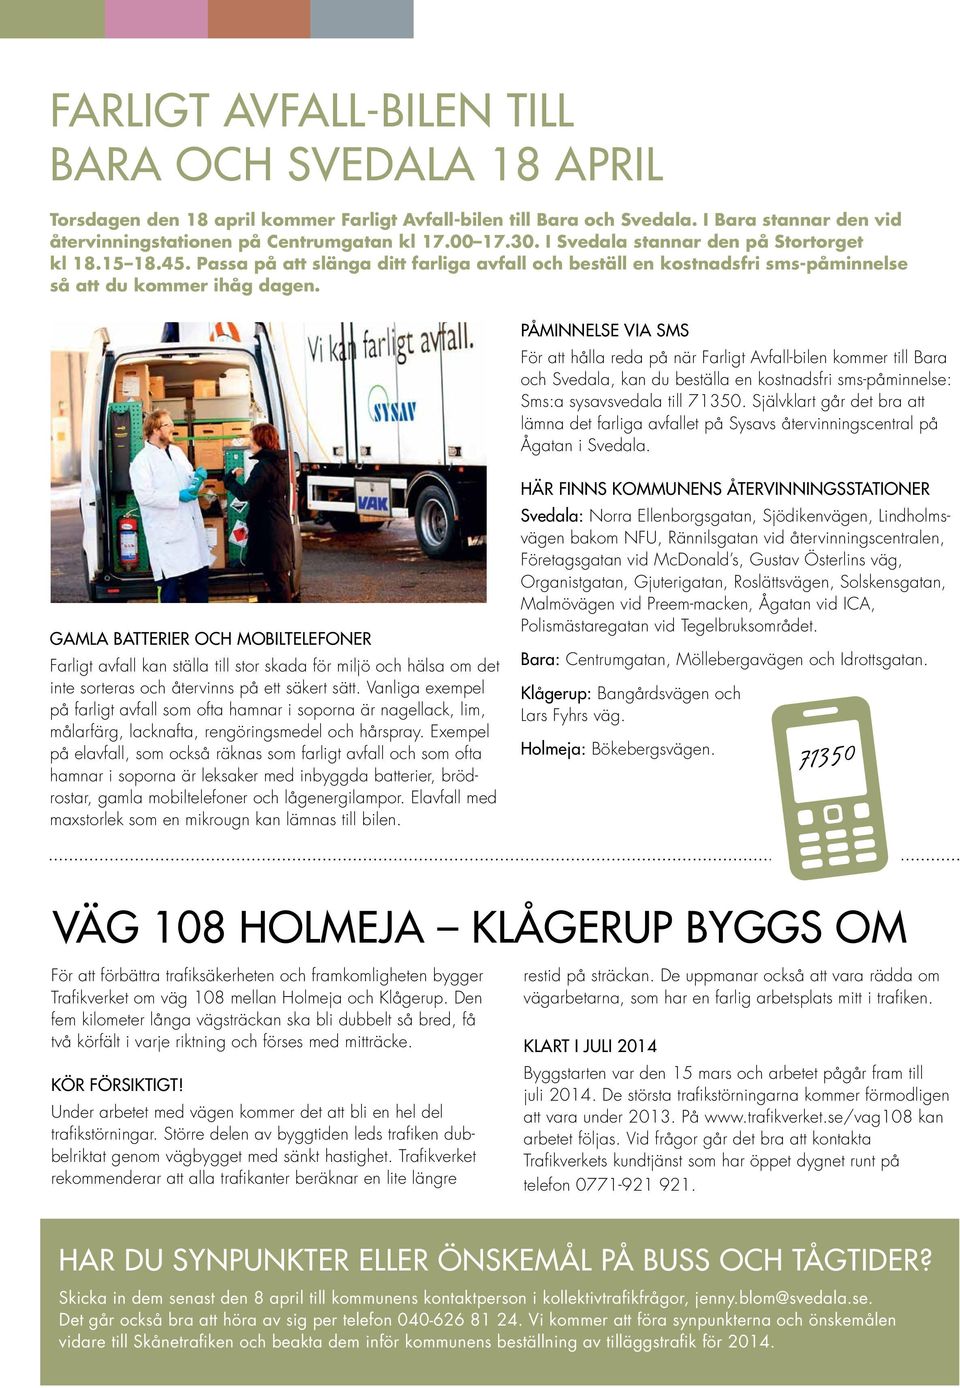 PÅMINNELSE VIA SMS För att hålla reda på när Farligt Avfall-bilen kommer till Bara och Svedala, kan du beställa en kostnadsfri sms-påminnelse: Sms:a sysavsvedala till 71350.